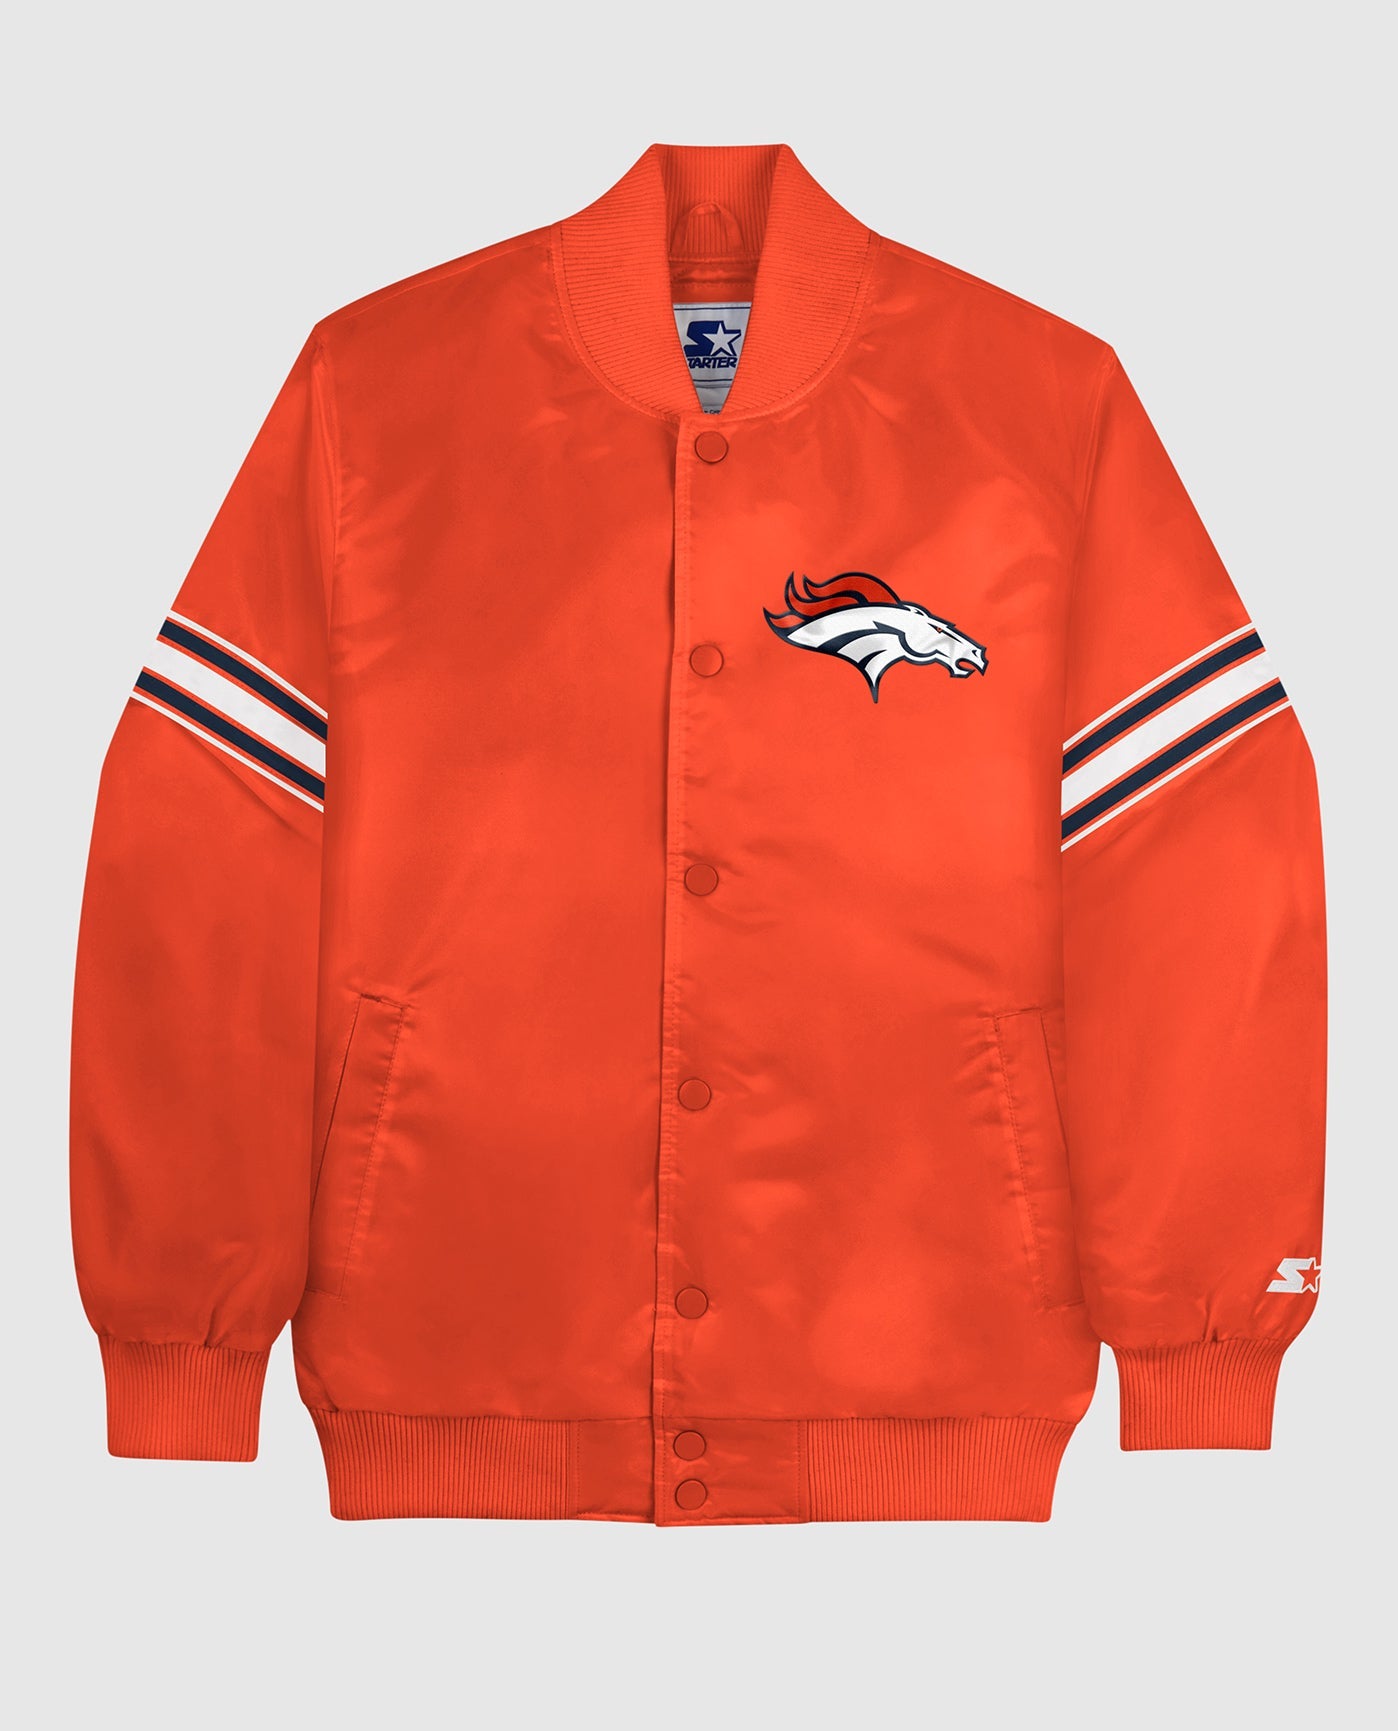 Broncos Orange